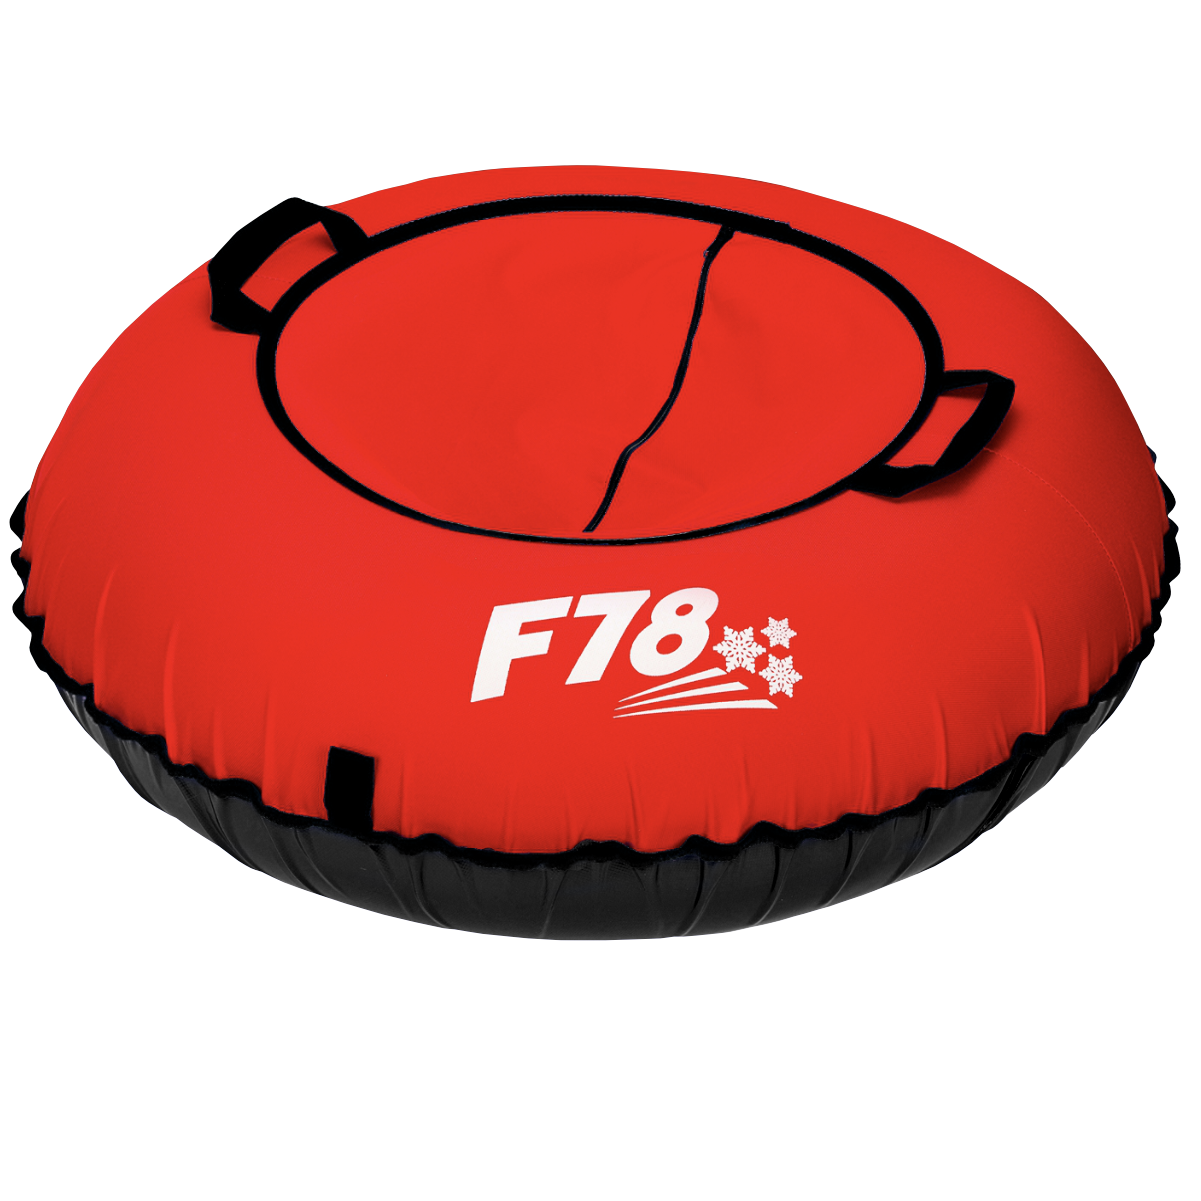 Санки надувные ватрушка F78 красная 85 см - фото 1